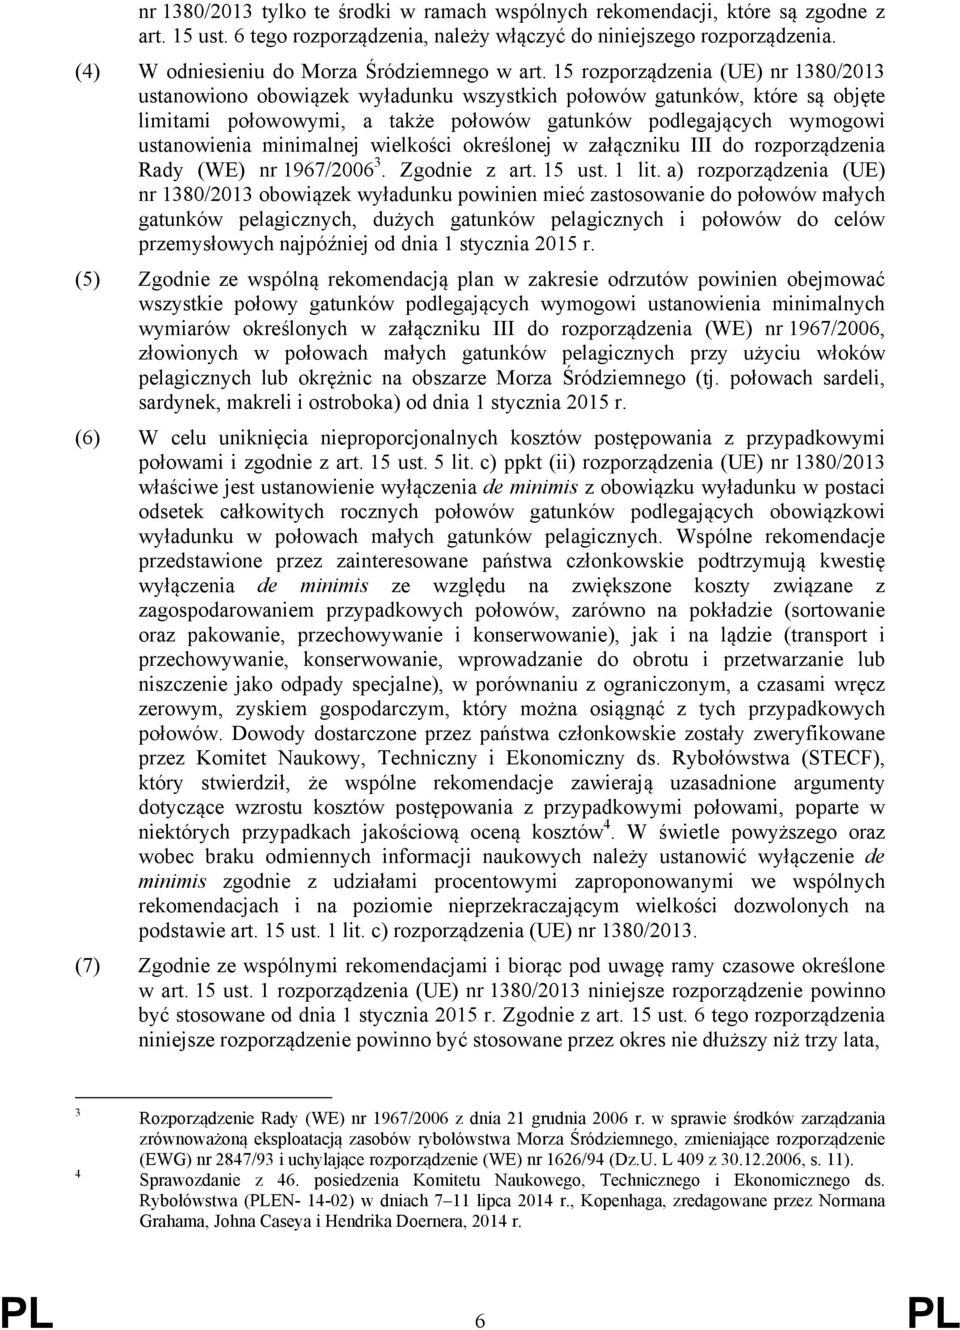 15 rozporządzenia (UE) nr 1380/2013 ustanowiono obowiązek wyładunku wszystkich połowów gatunków, które są objęte limitami połowowymi, a także połowów gatunków podlegających wymogowi ustanowienia